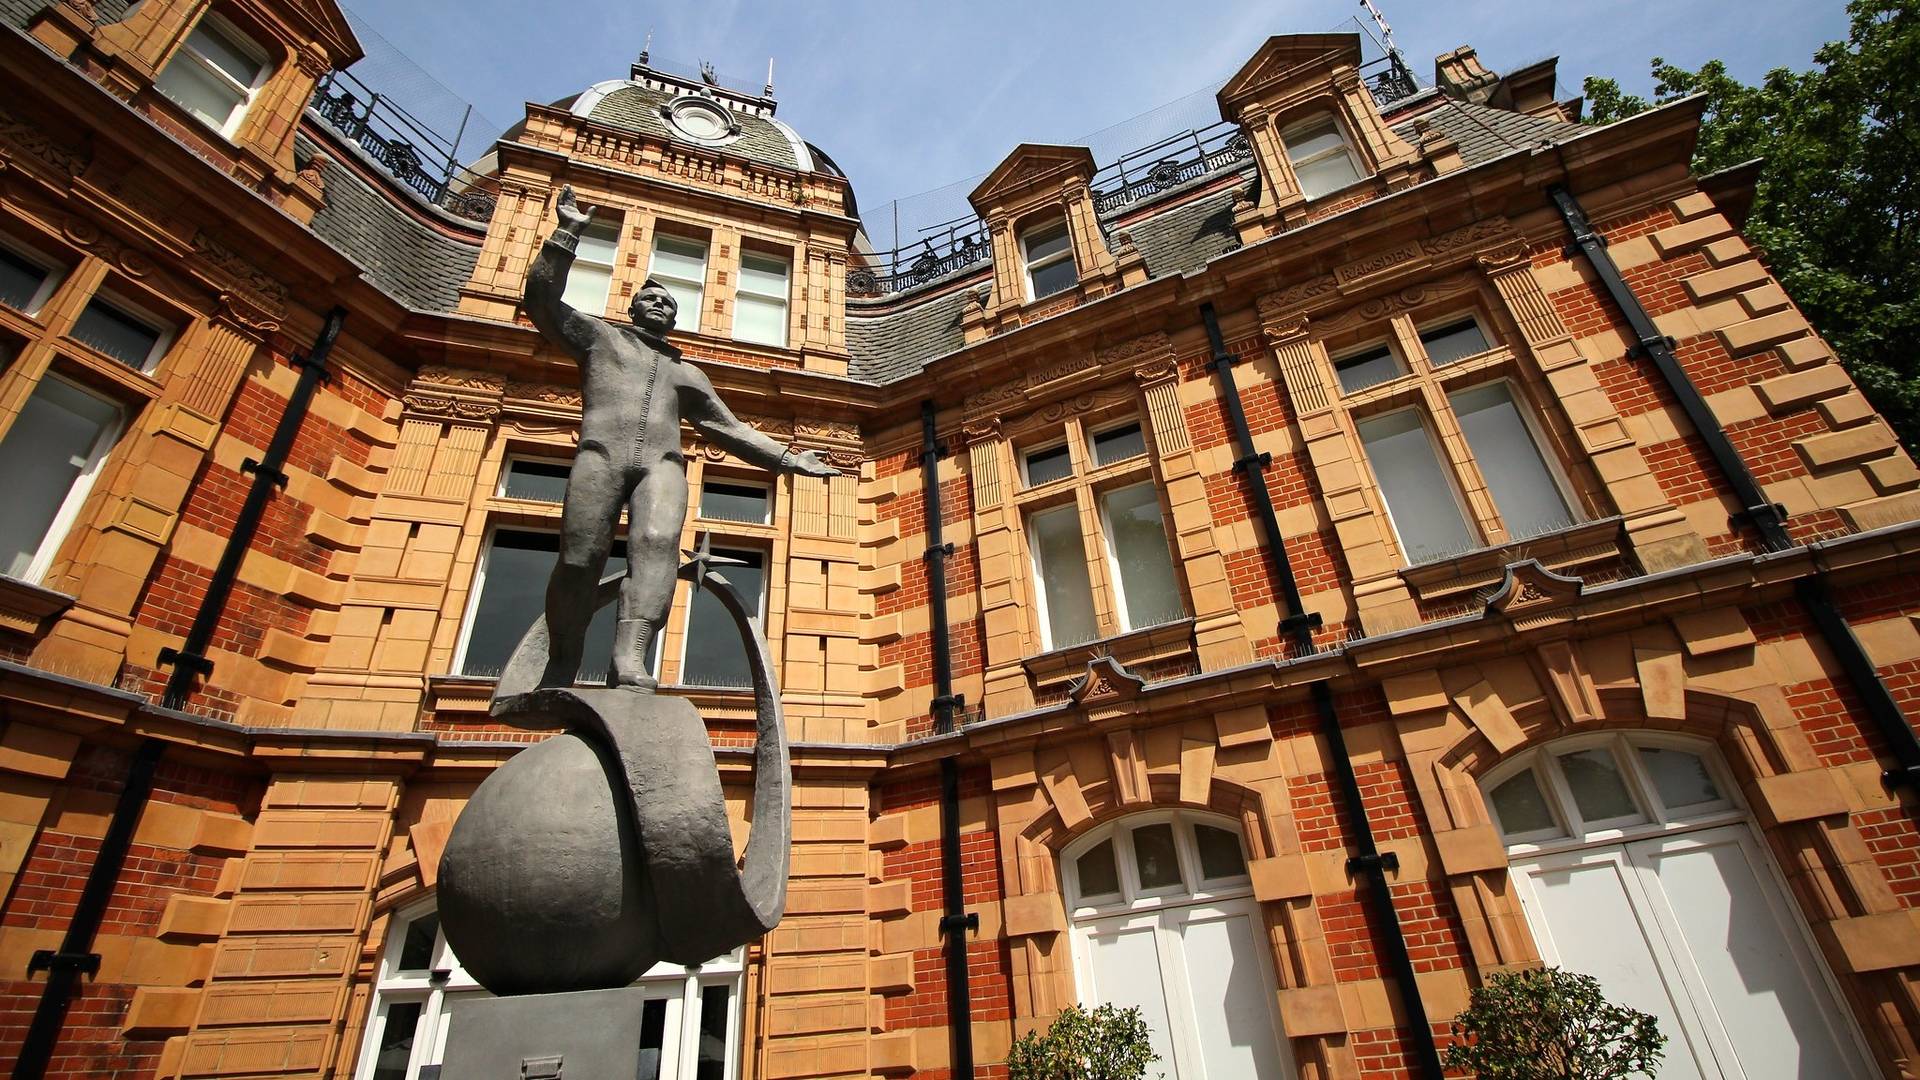 Статуя Юрия Гагарина в Гринвичской королевской обсерватории в Лондоне